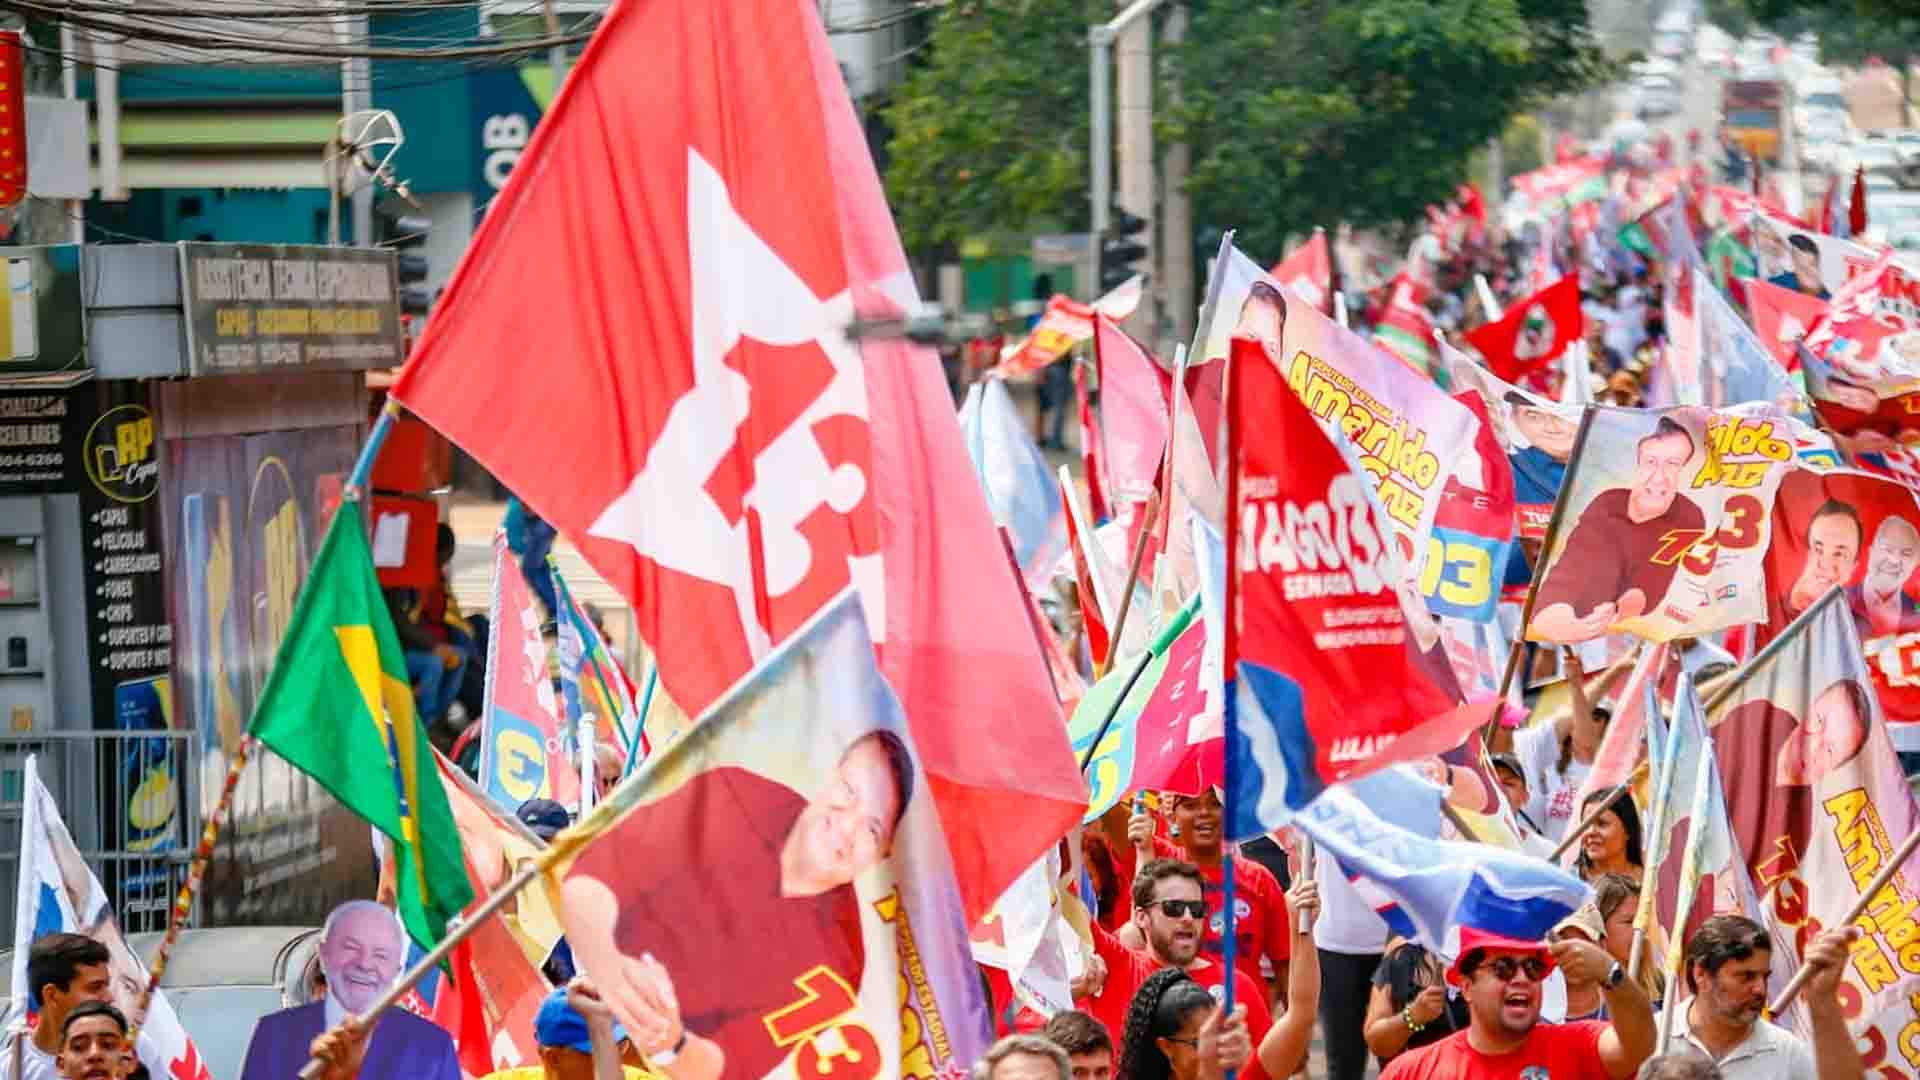 Movimentos sociais e apoiadores marcham na Afonso Pena em apoio à candidatura de Lula